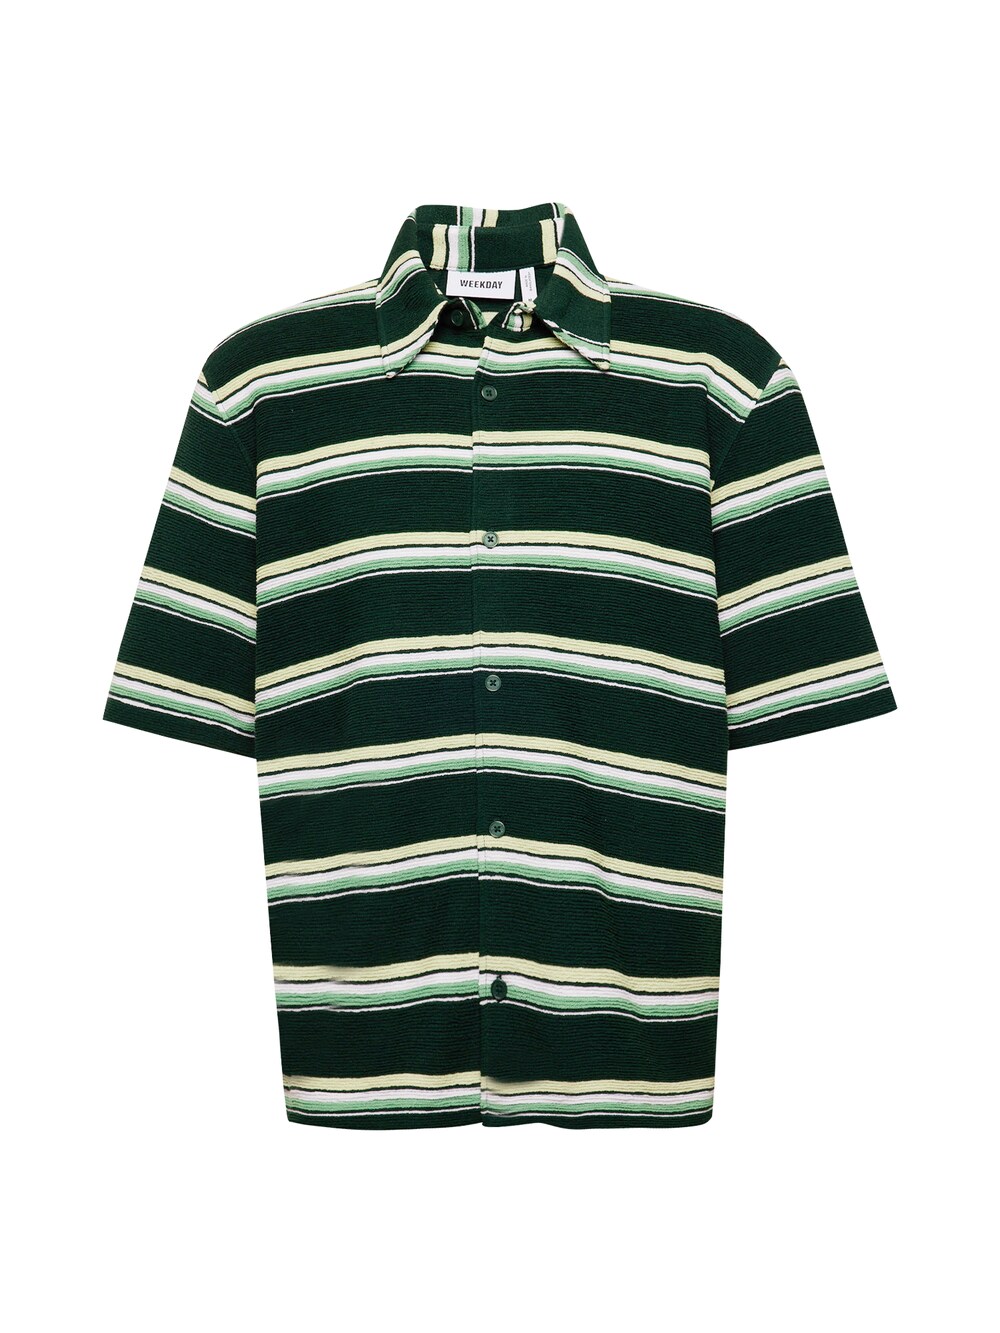 Рубашка на пуговицах стандартного кроя Weekday, зеленый/пастельно-зеленый/светло-зеленый